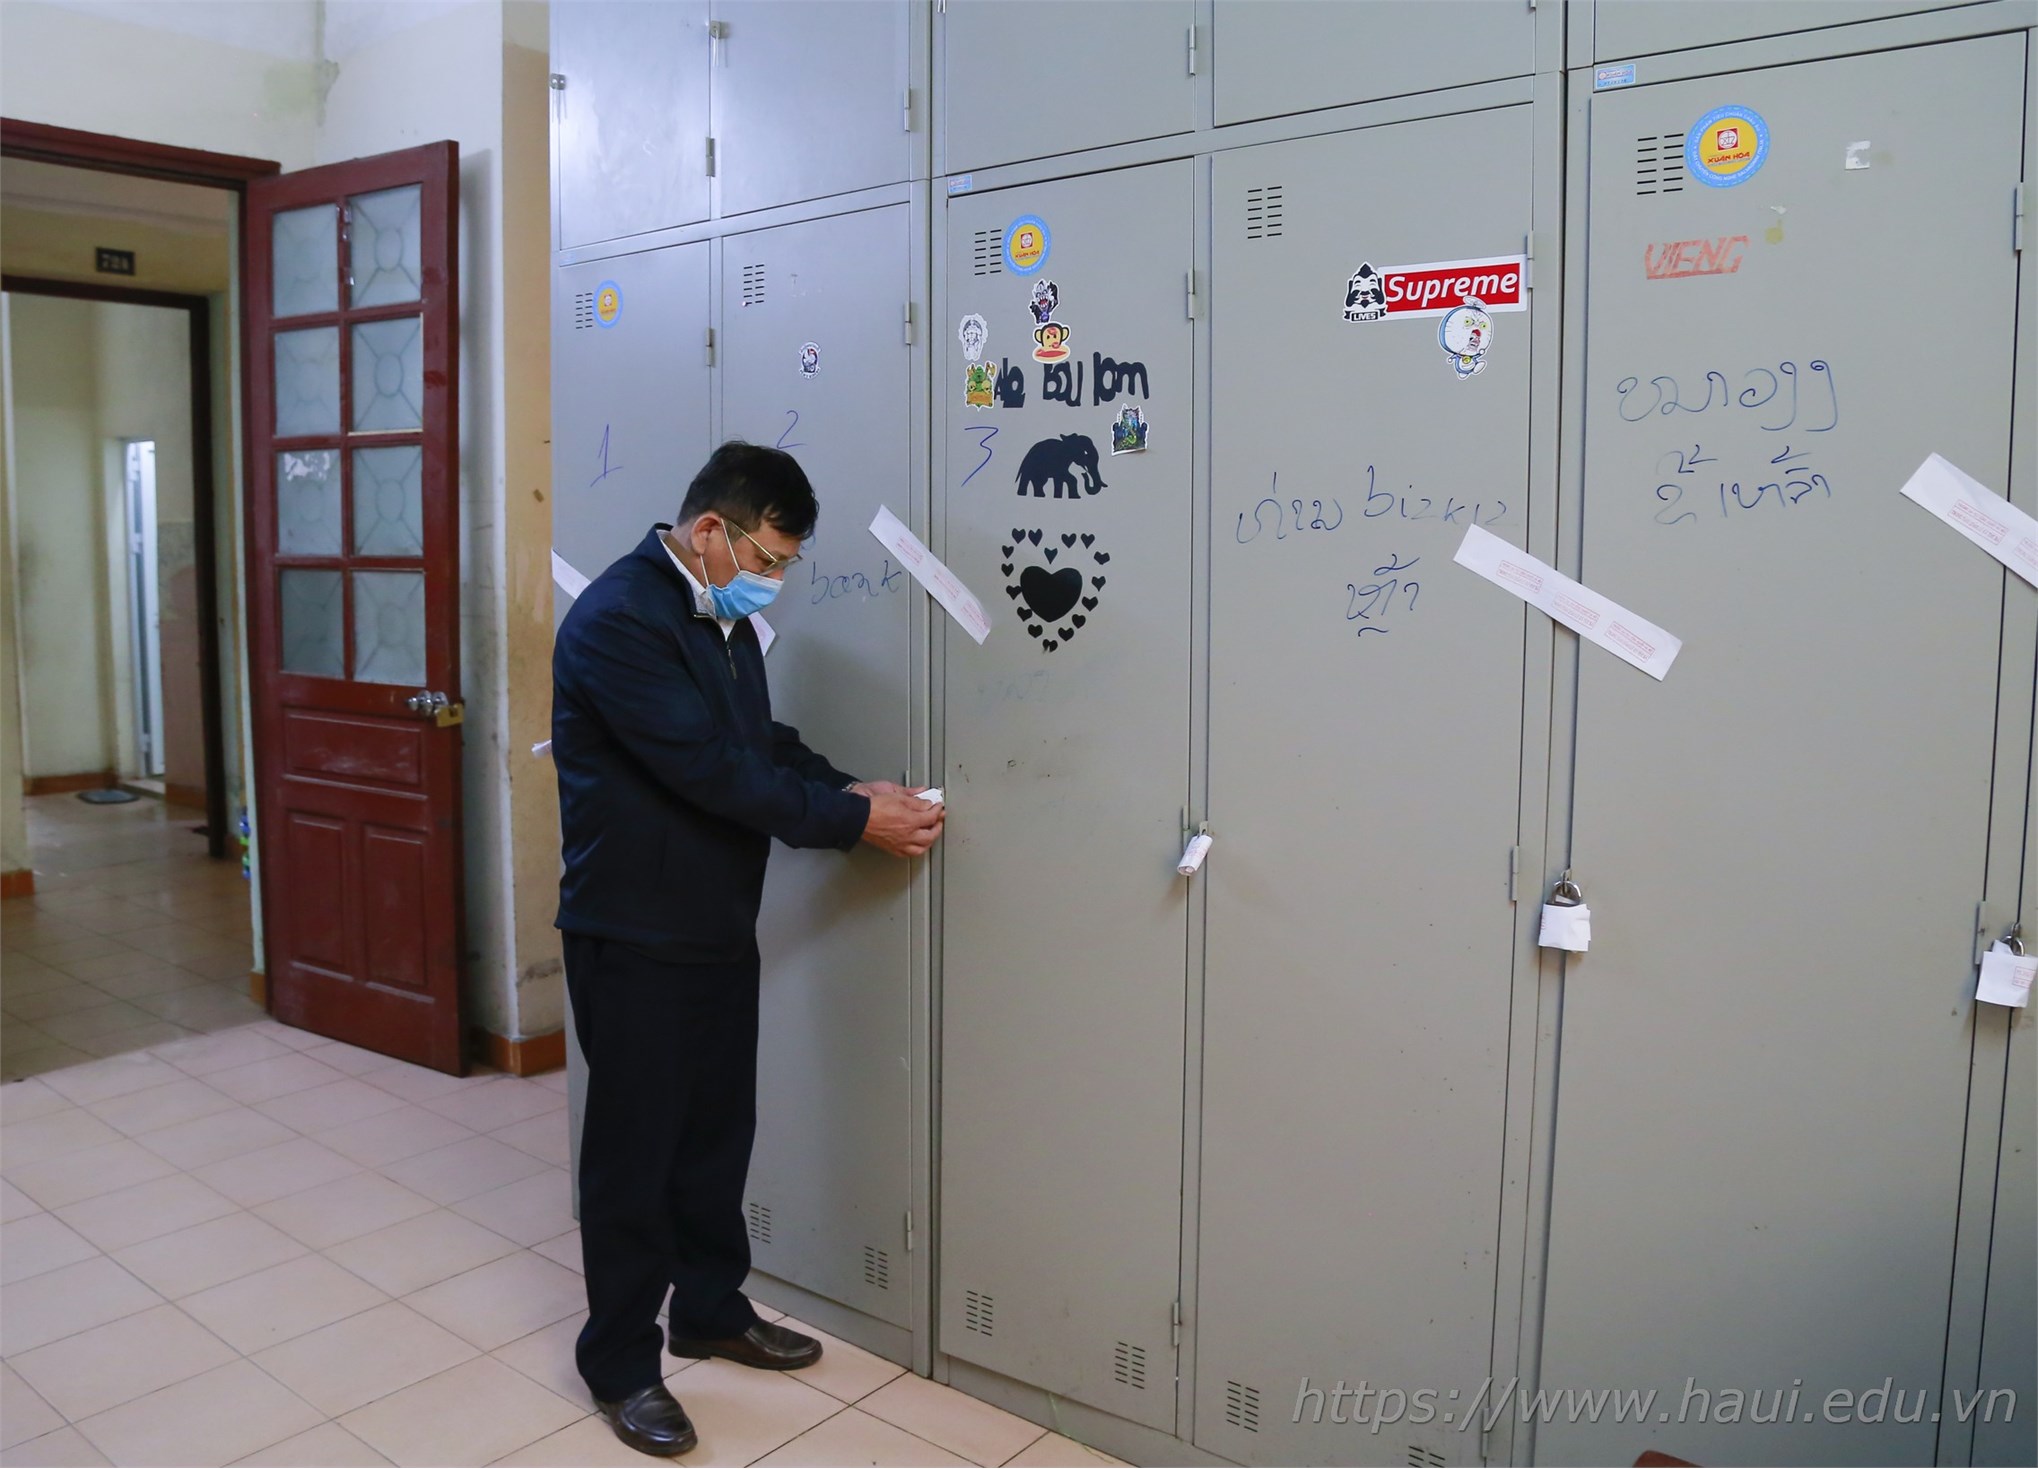 Tâm sự của sinh viên Đại học Công nghiệp Hà Nội ở Ký túc xá thời COVID-19